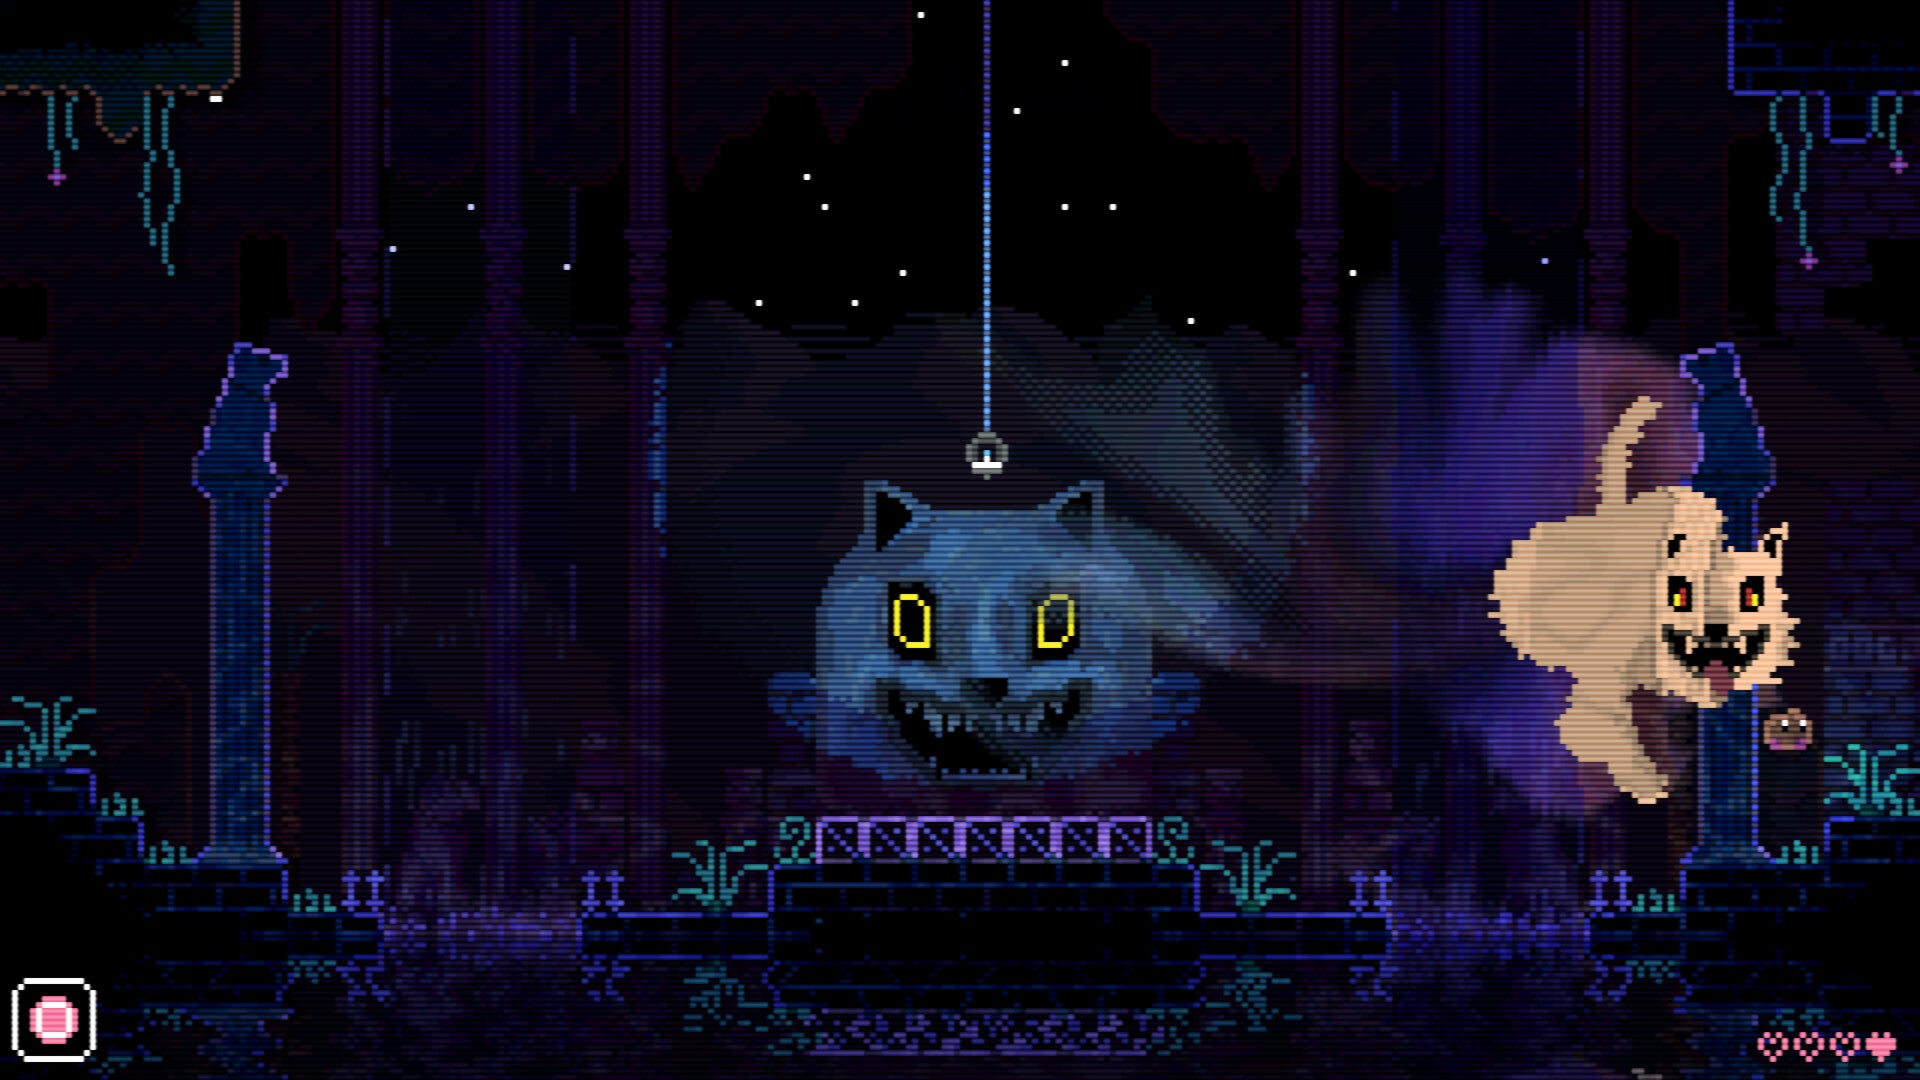 在一个2D平台游戏的背景中，两个可怕的、像素化的猫幻象出现。它们微笑着，但肯定令人不安。